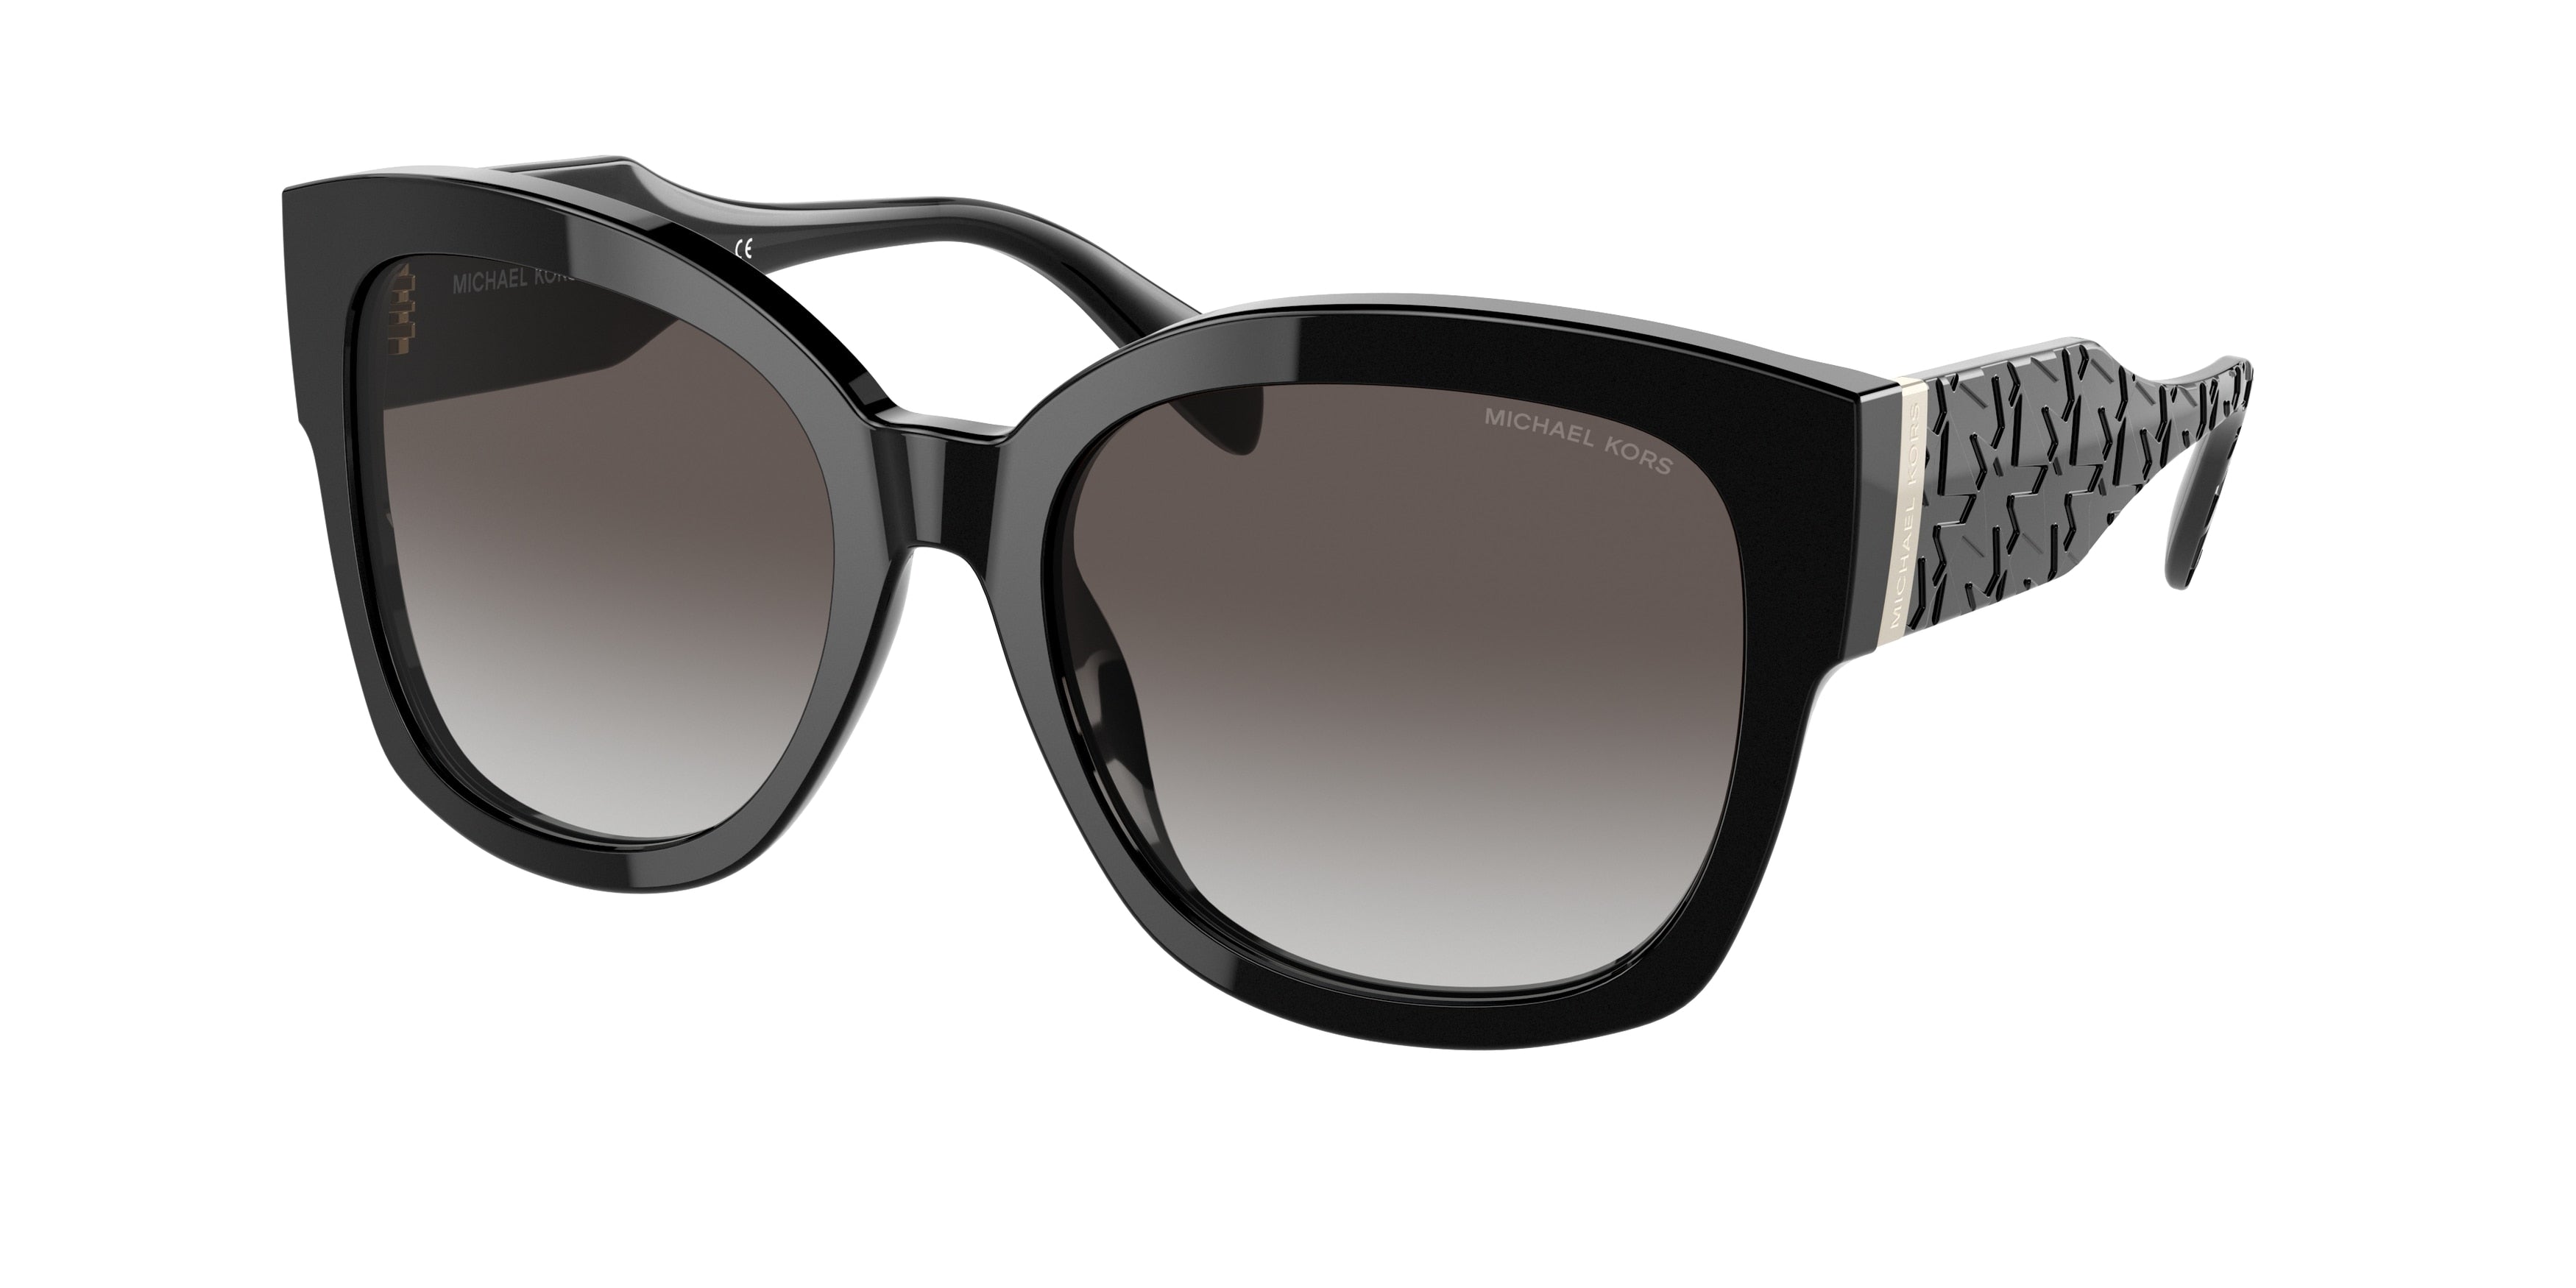 Michael Kors BAJA MK2164 Square Sunglasses  30058G-Black 56-140-18 - Color Map Black